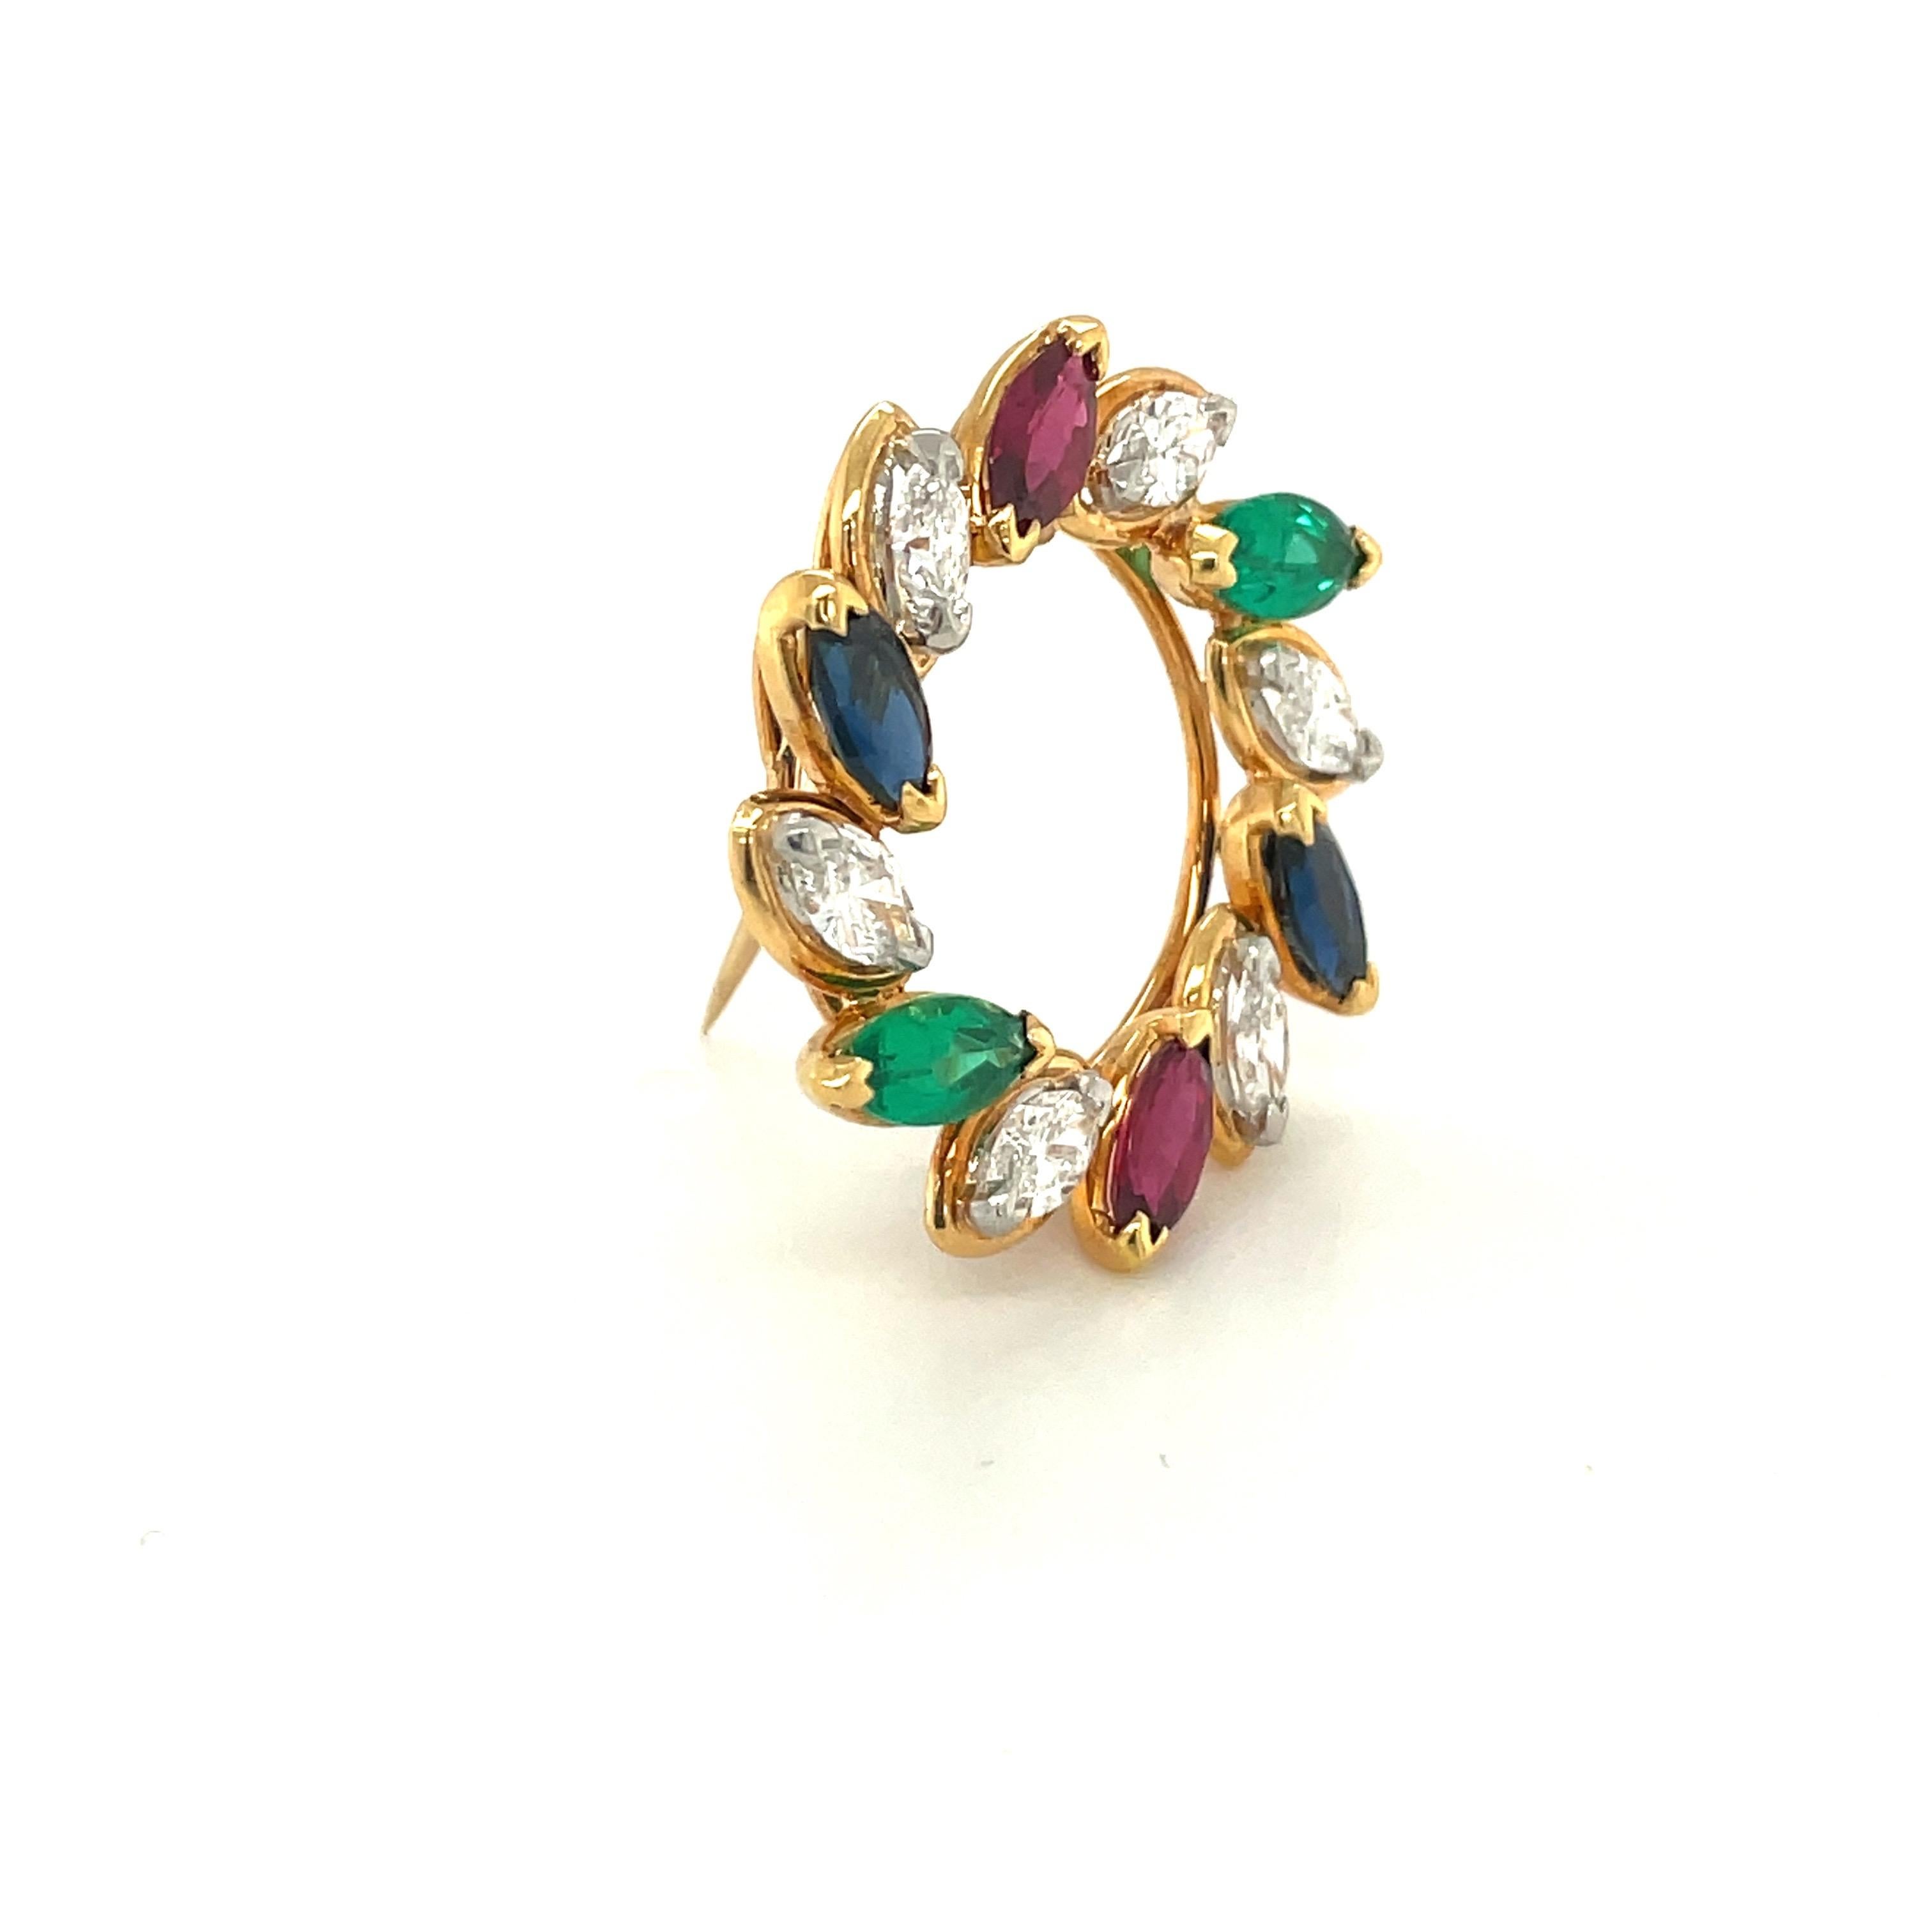 Seit 1912 kreiert Oscar Heyman außergewöhnliche Schmuckstücke für Kenner und Sammler. Bekannt als der Juwelier der Juweliere